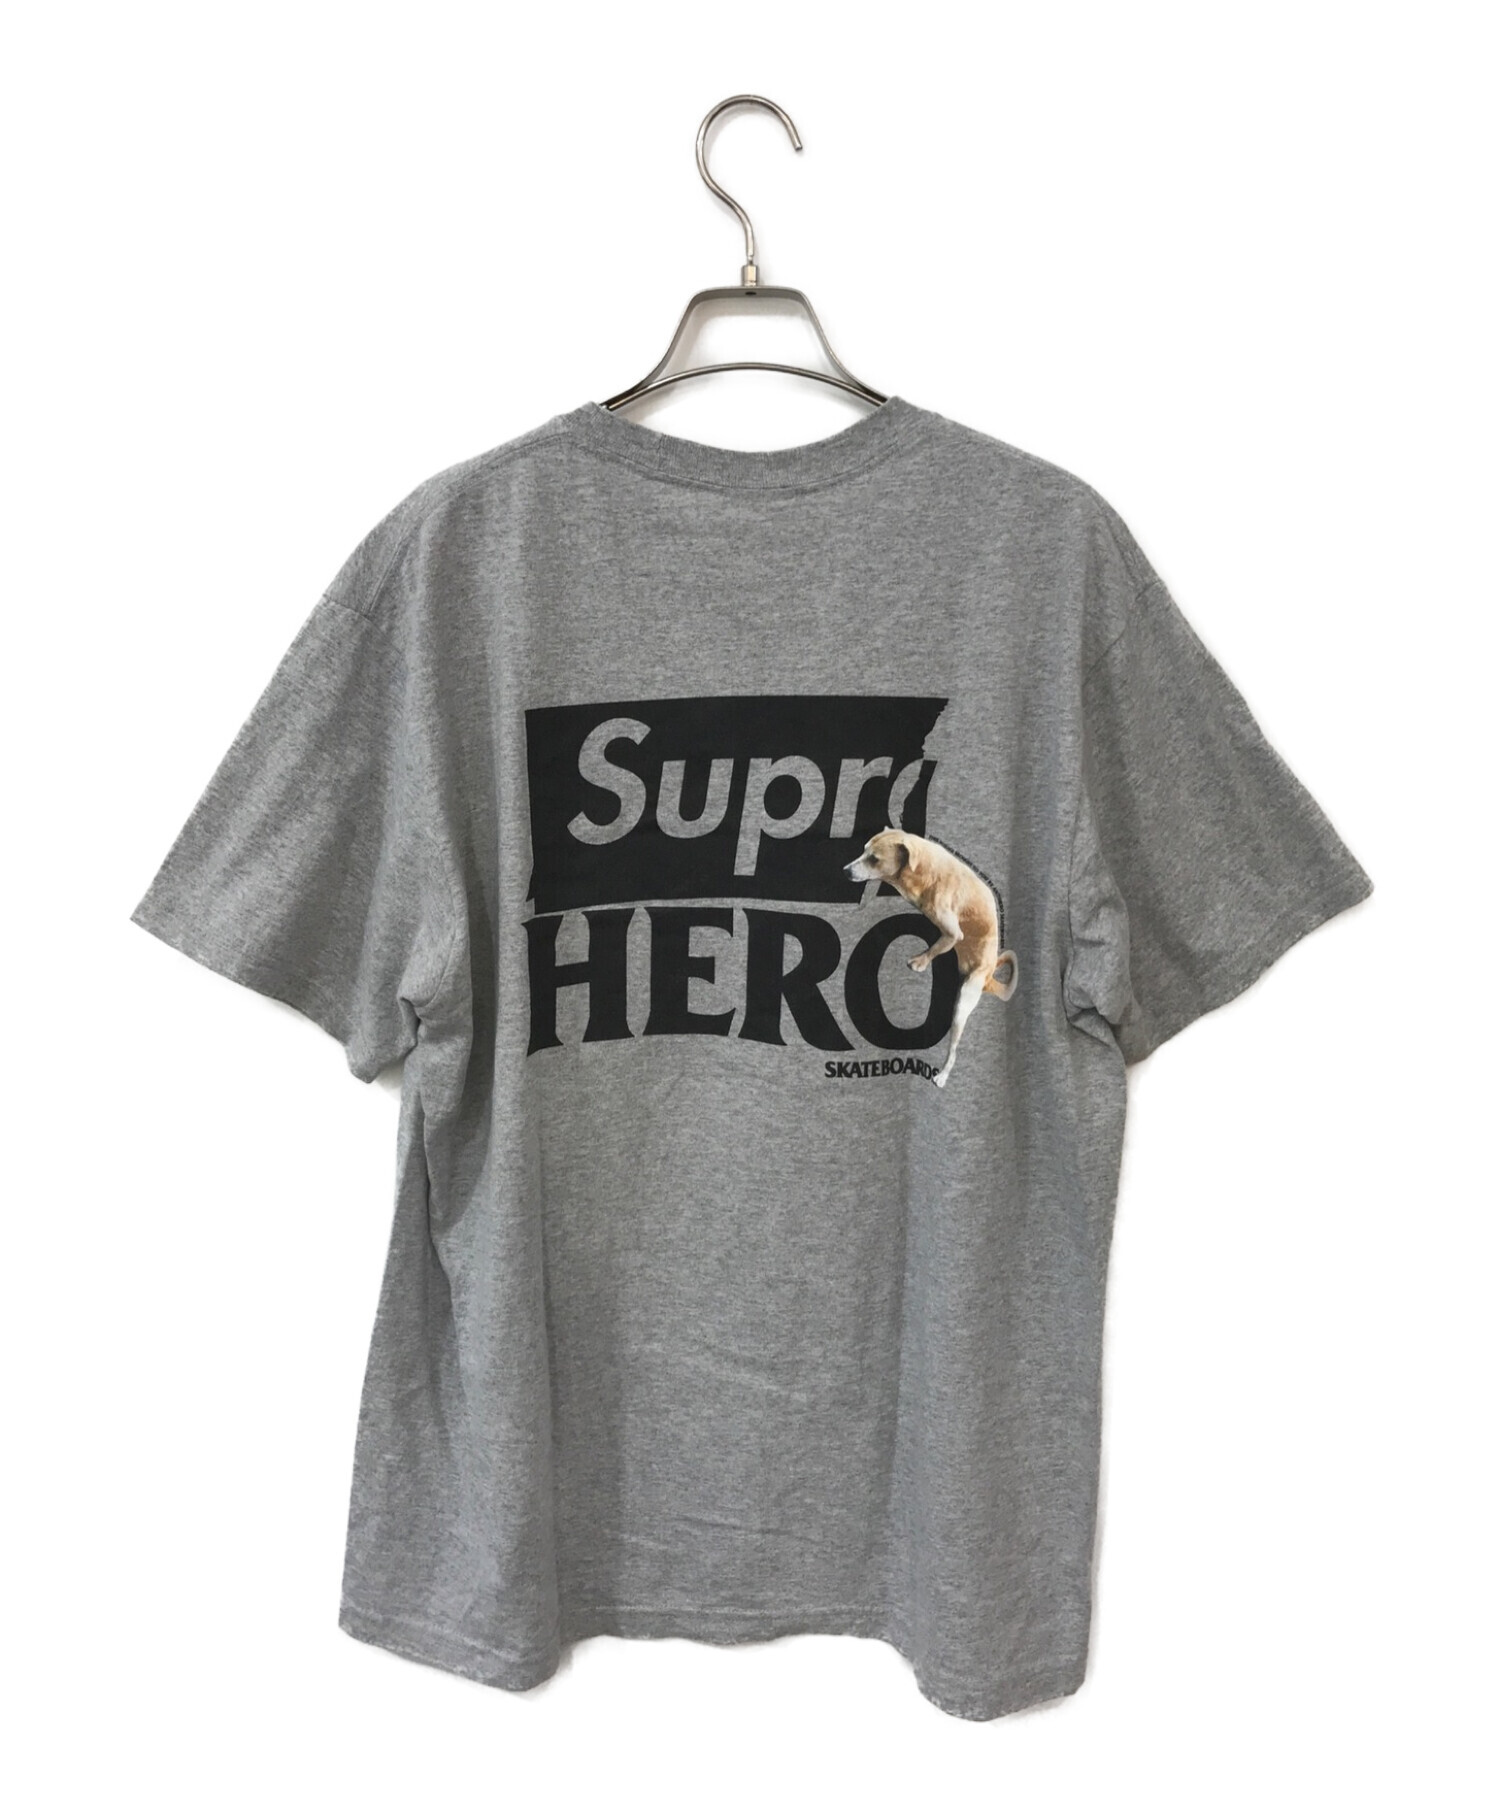 Supreme××ANTIHERO (シュプリーム×アンタイヒーロー) コラボプリントTシャツ グレー×ブラック サイズ:M